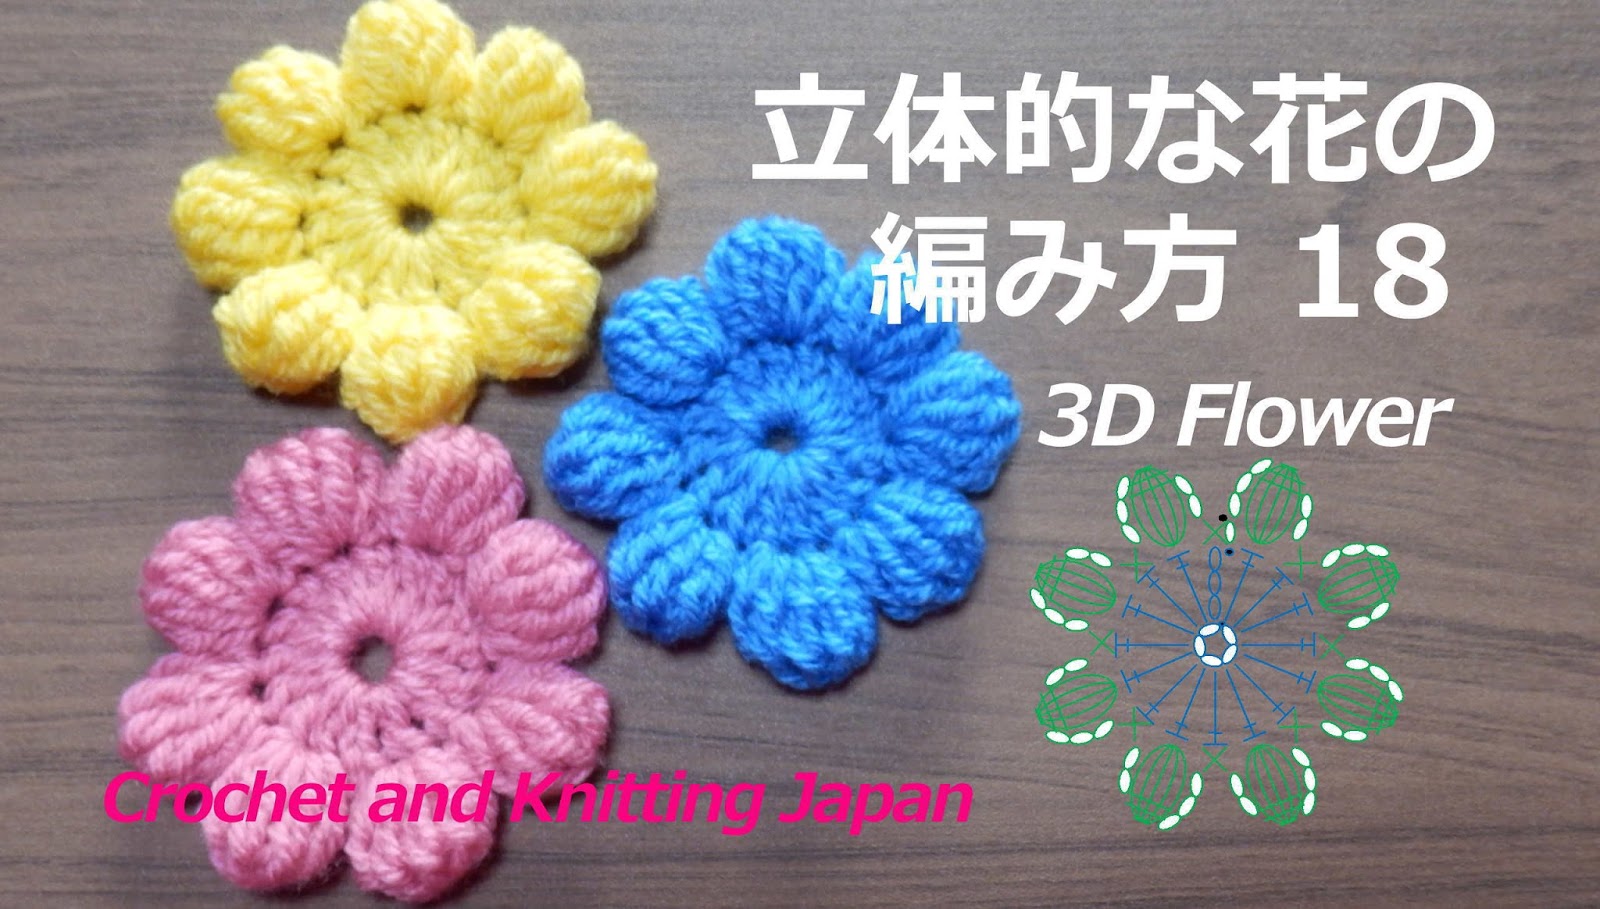 かぎ編み Crochet Japan クロッシェジャパン 立体的な花の編み方 18 長々編みの玉編み８個 かぎ針編み 編み図 字幕解説 How To Crochet 3d Flower Crochet And Knitting Japan